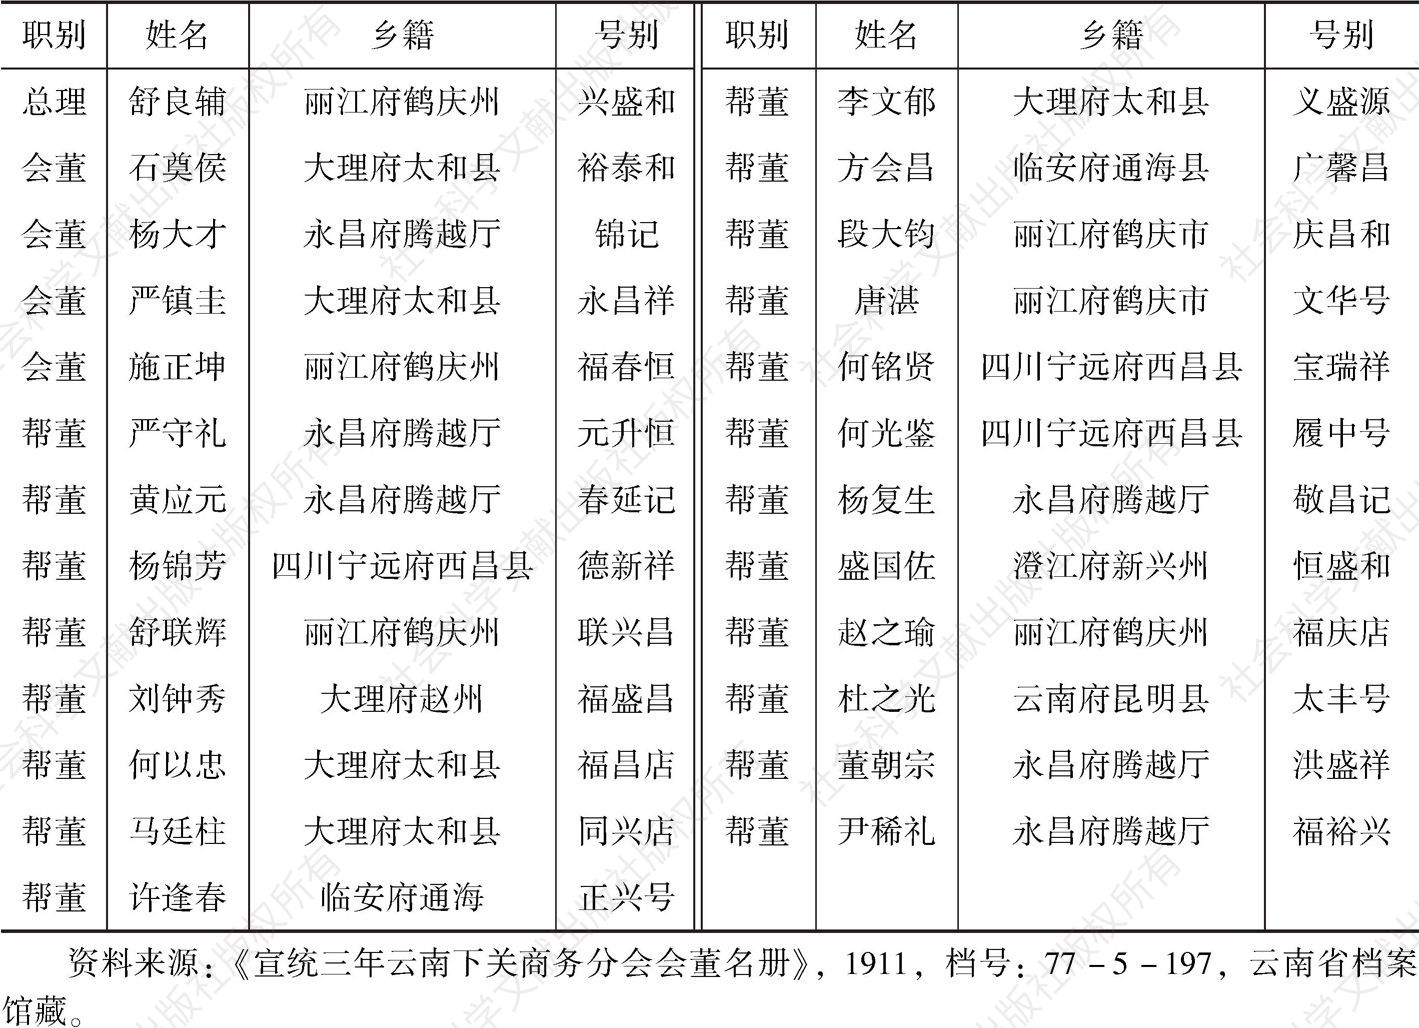 表1-2 1911年云南下关商务分会会董名册